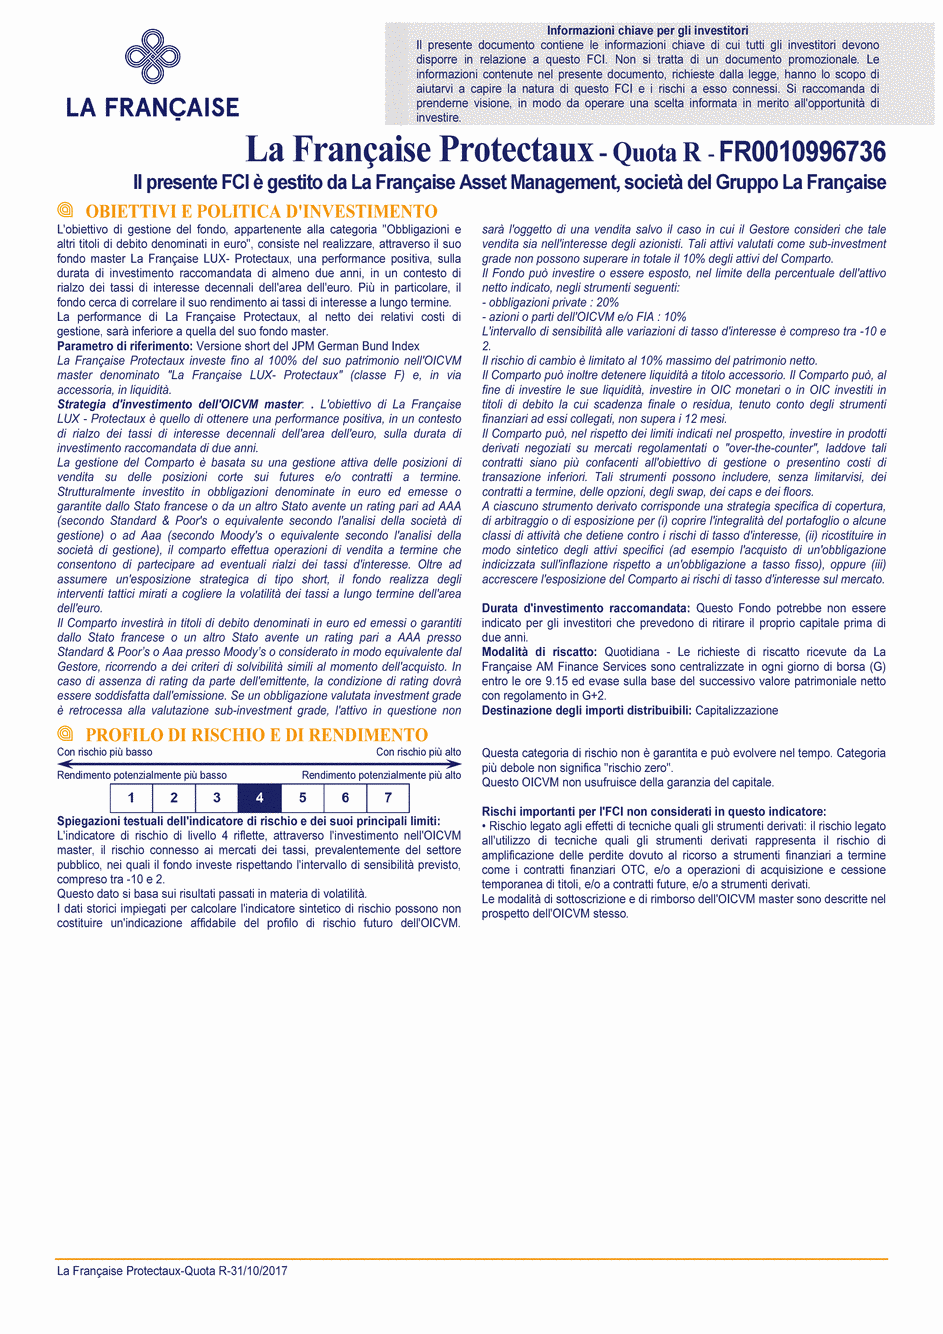 DICI La Française Protectaux - Part R - 31/10/2017 - Italien